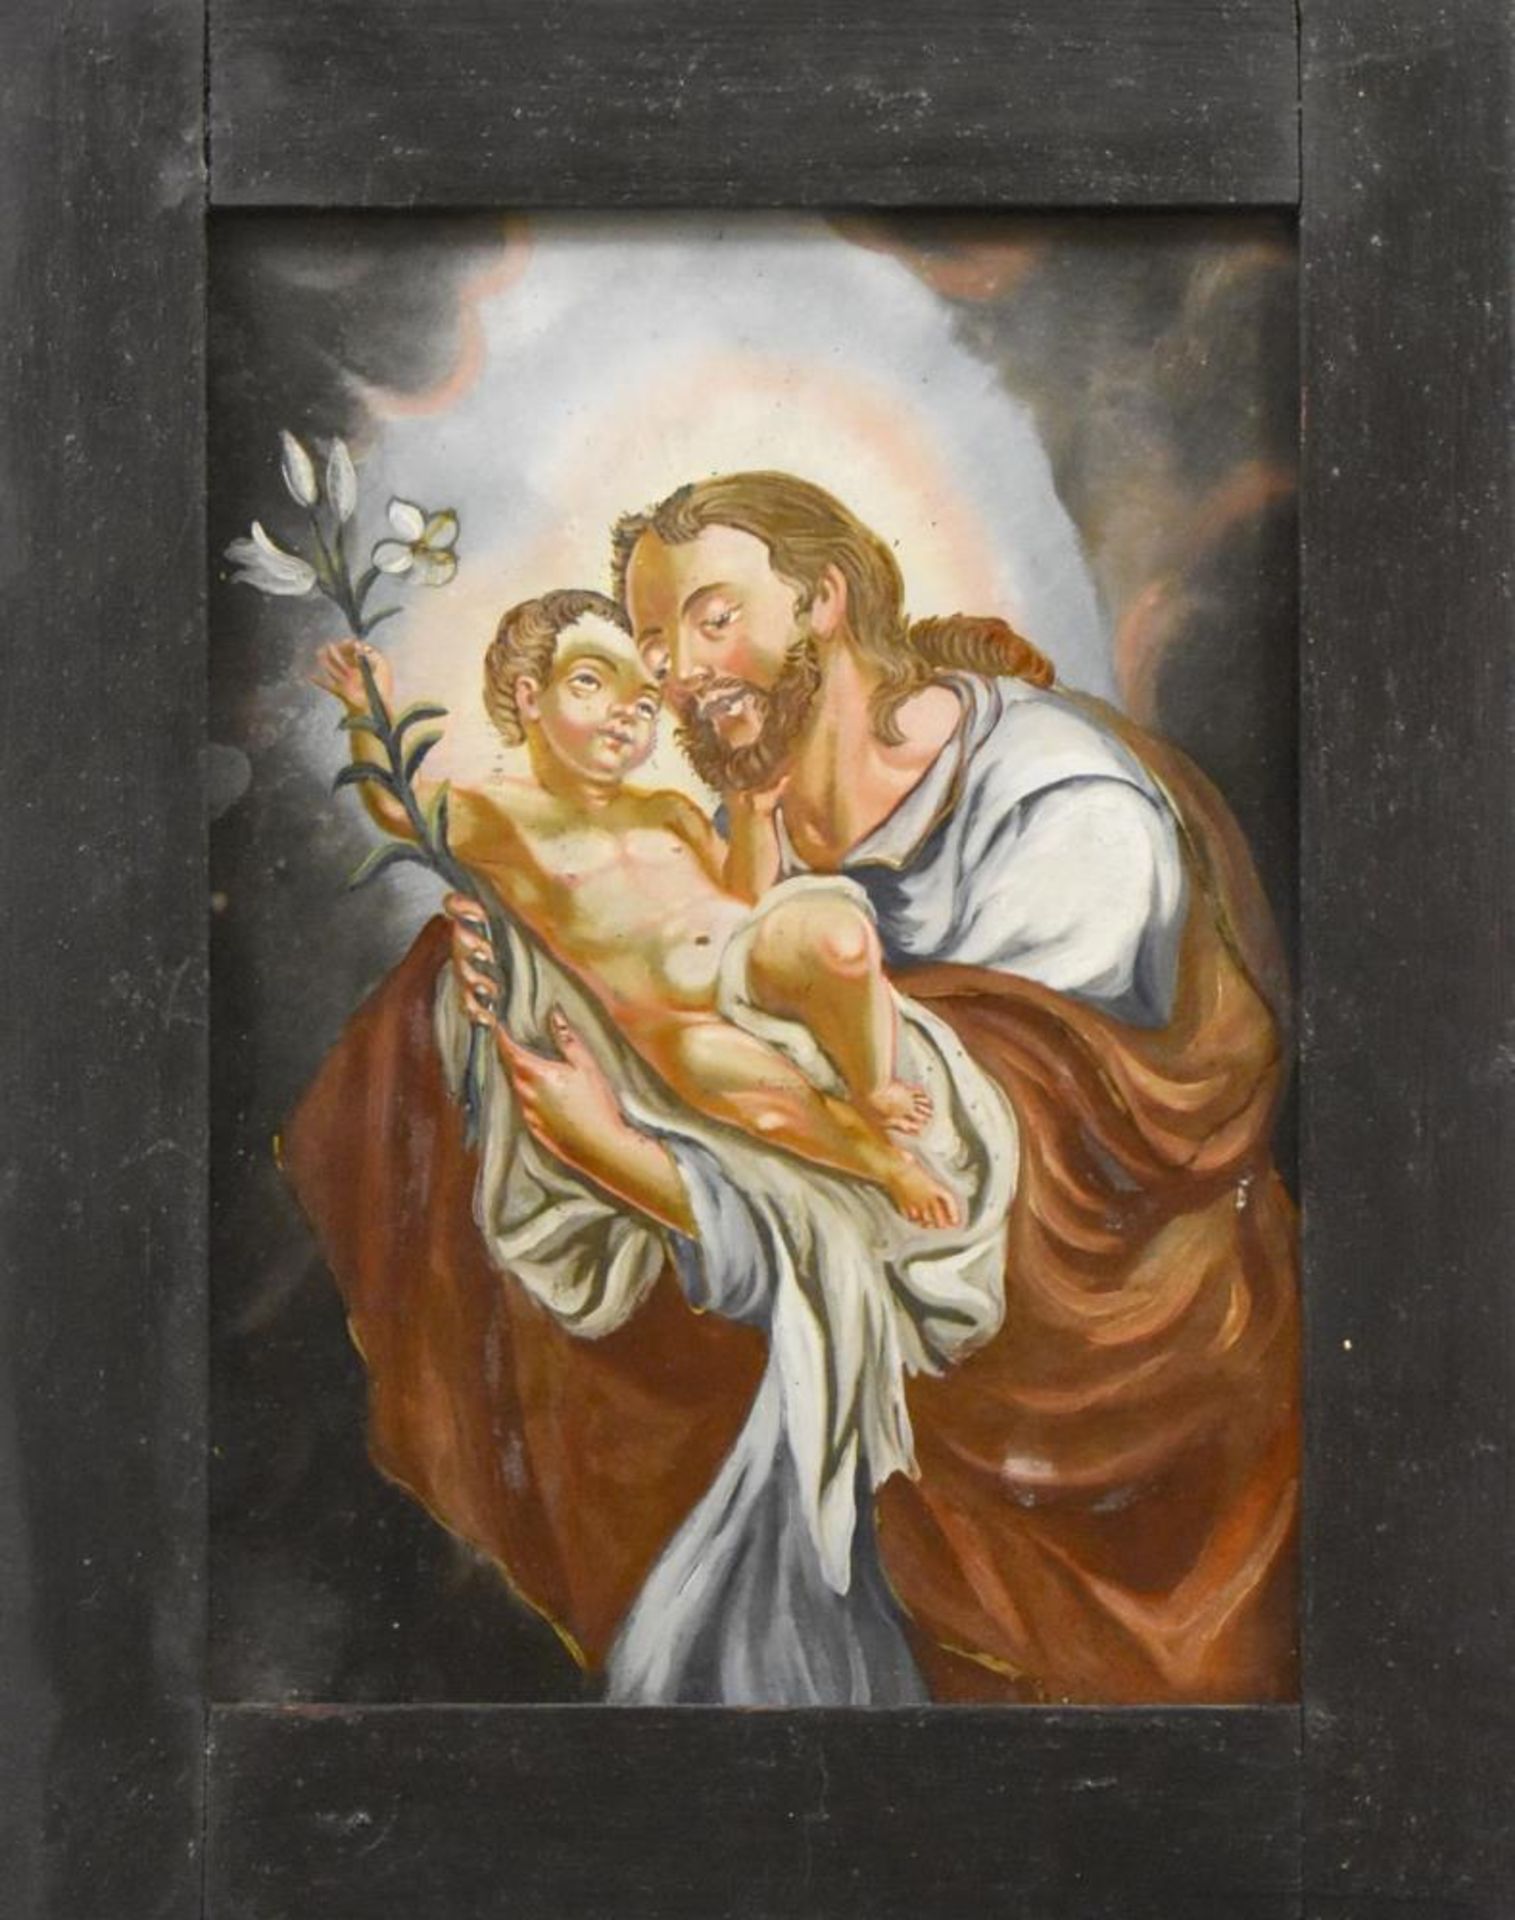 Hinterglasbild: Hl. Josef mit dem Jesuskind. Süddeutsch, 19. Jh. |